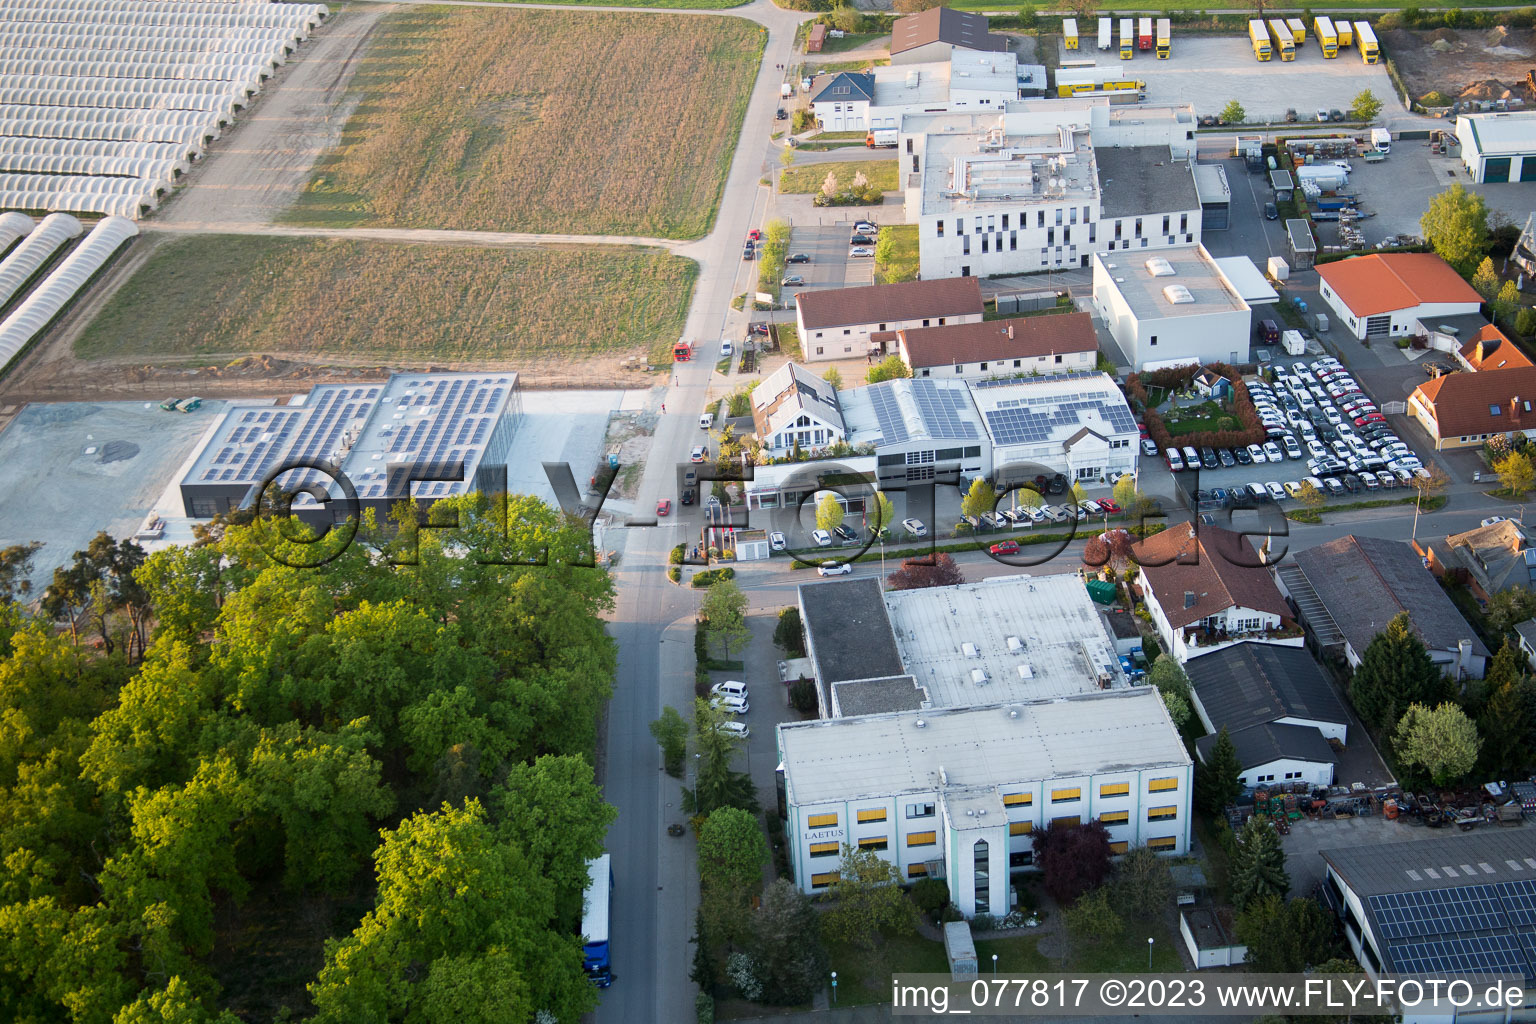 Alsbach-Hänlein, Industriegebiet Sandwiese in Alsbach-Hähnlein im Bundesland Hessen, Deutschland von der Drohne aus gesehen